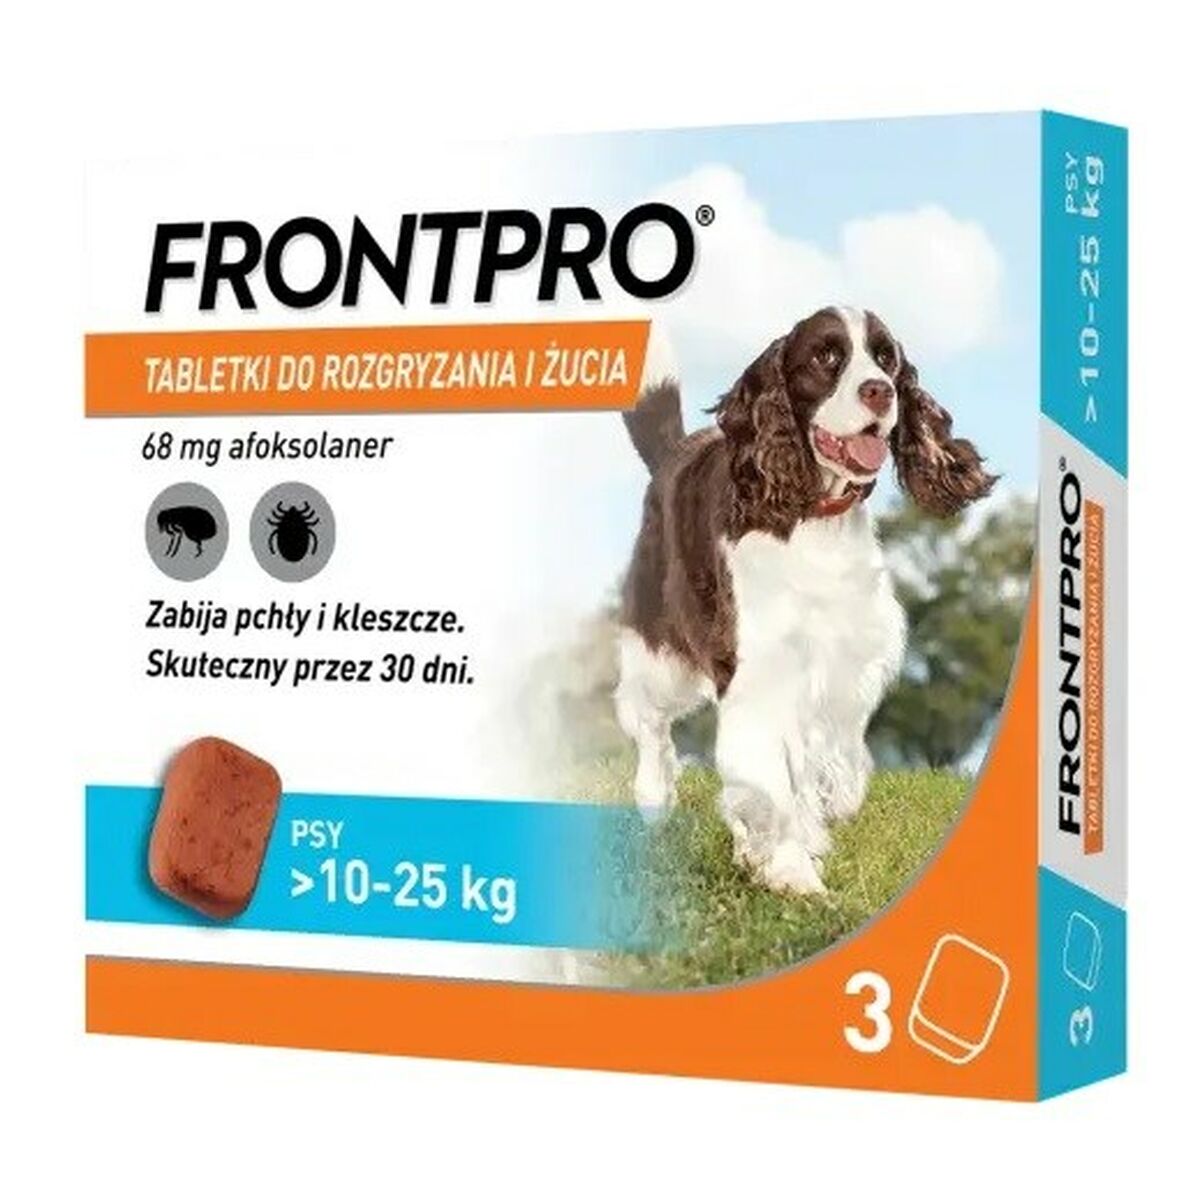 Compresse FRONTPRO 612473 15 g 3 x 68 mg Adatto a cani fino a >10-25 kg